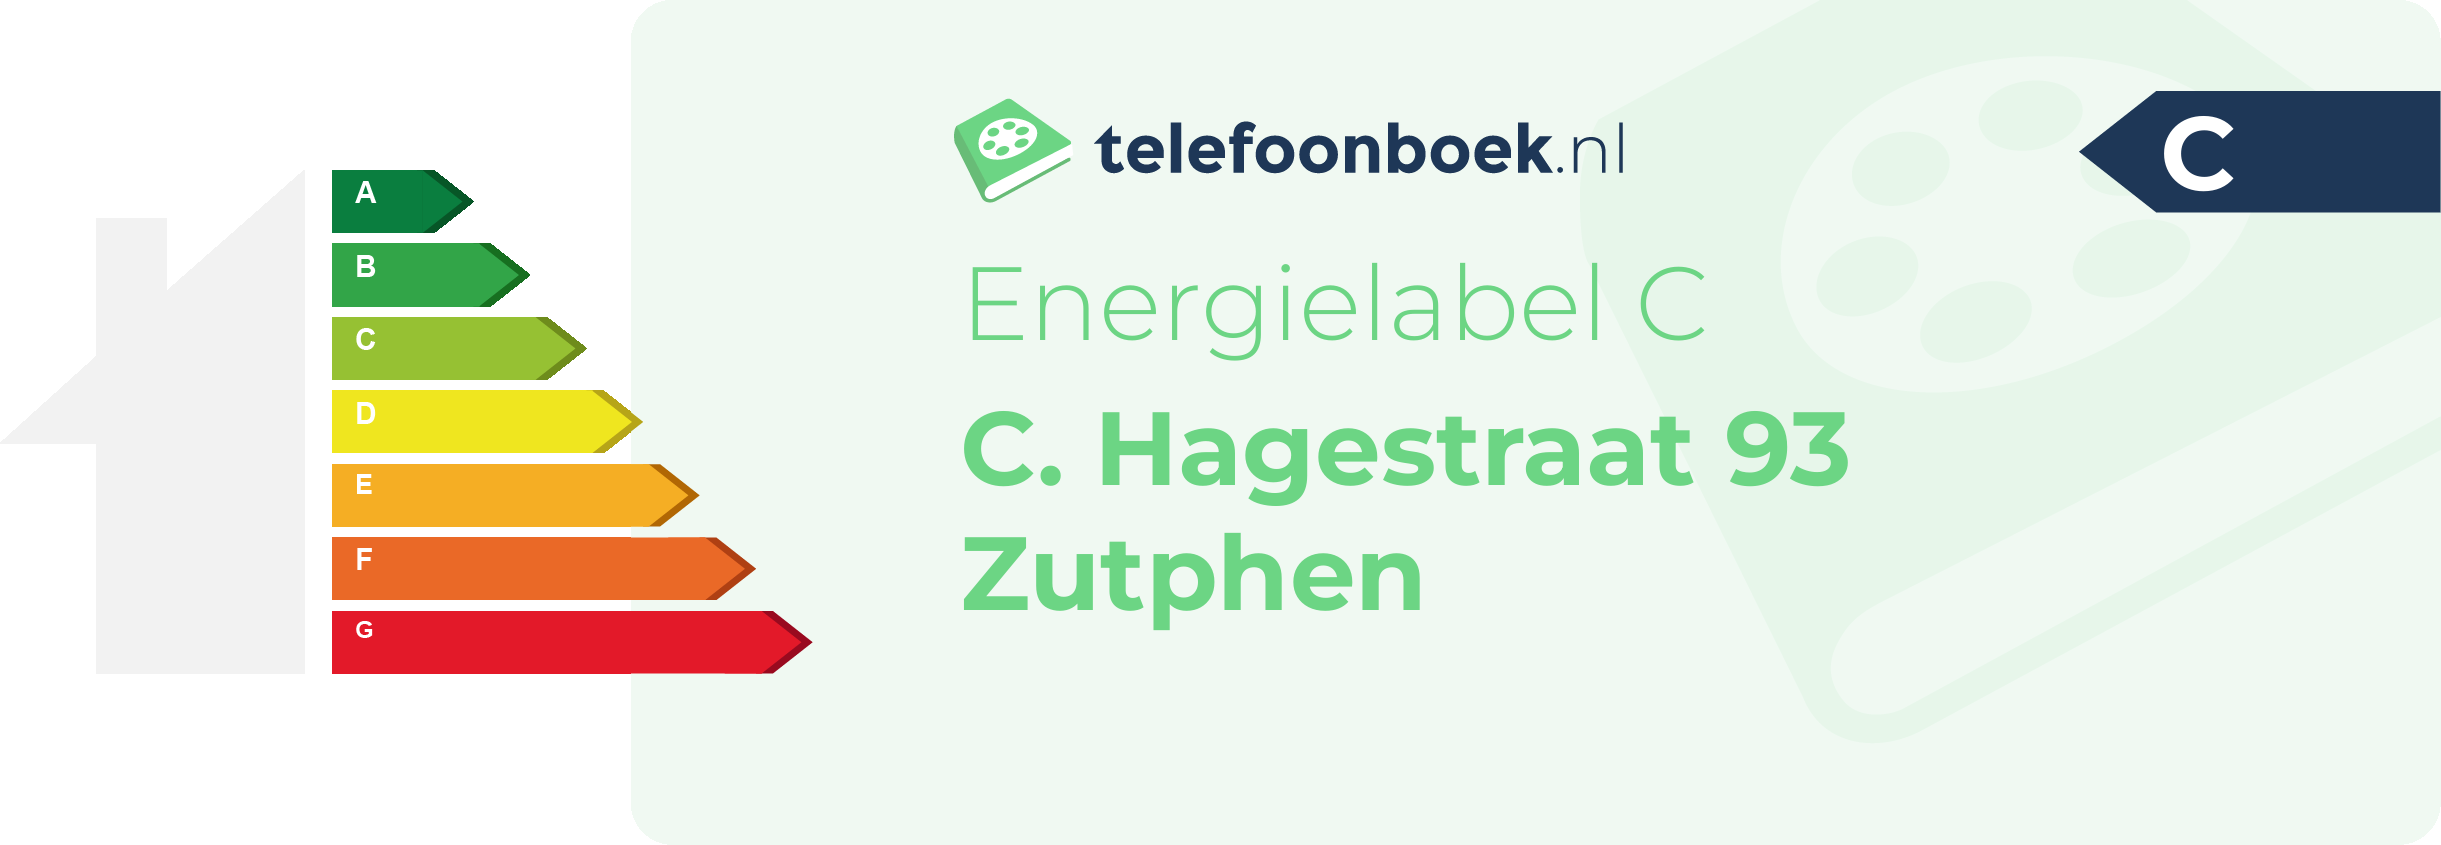 Energielabel C. Hagestraat 93 Zutphen